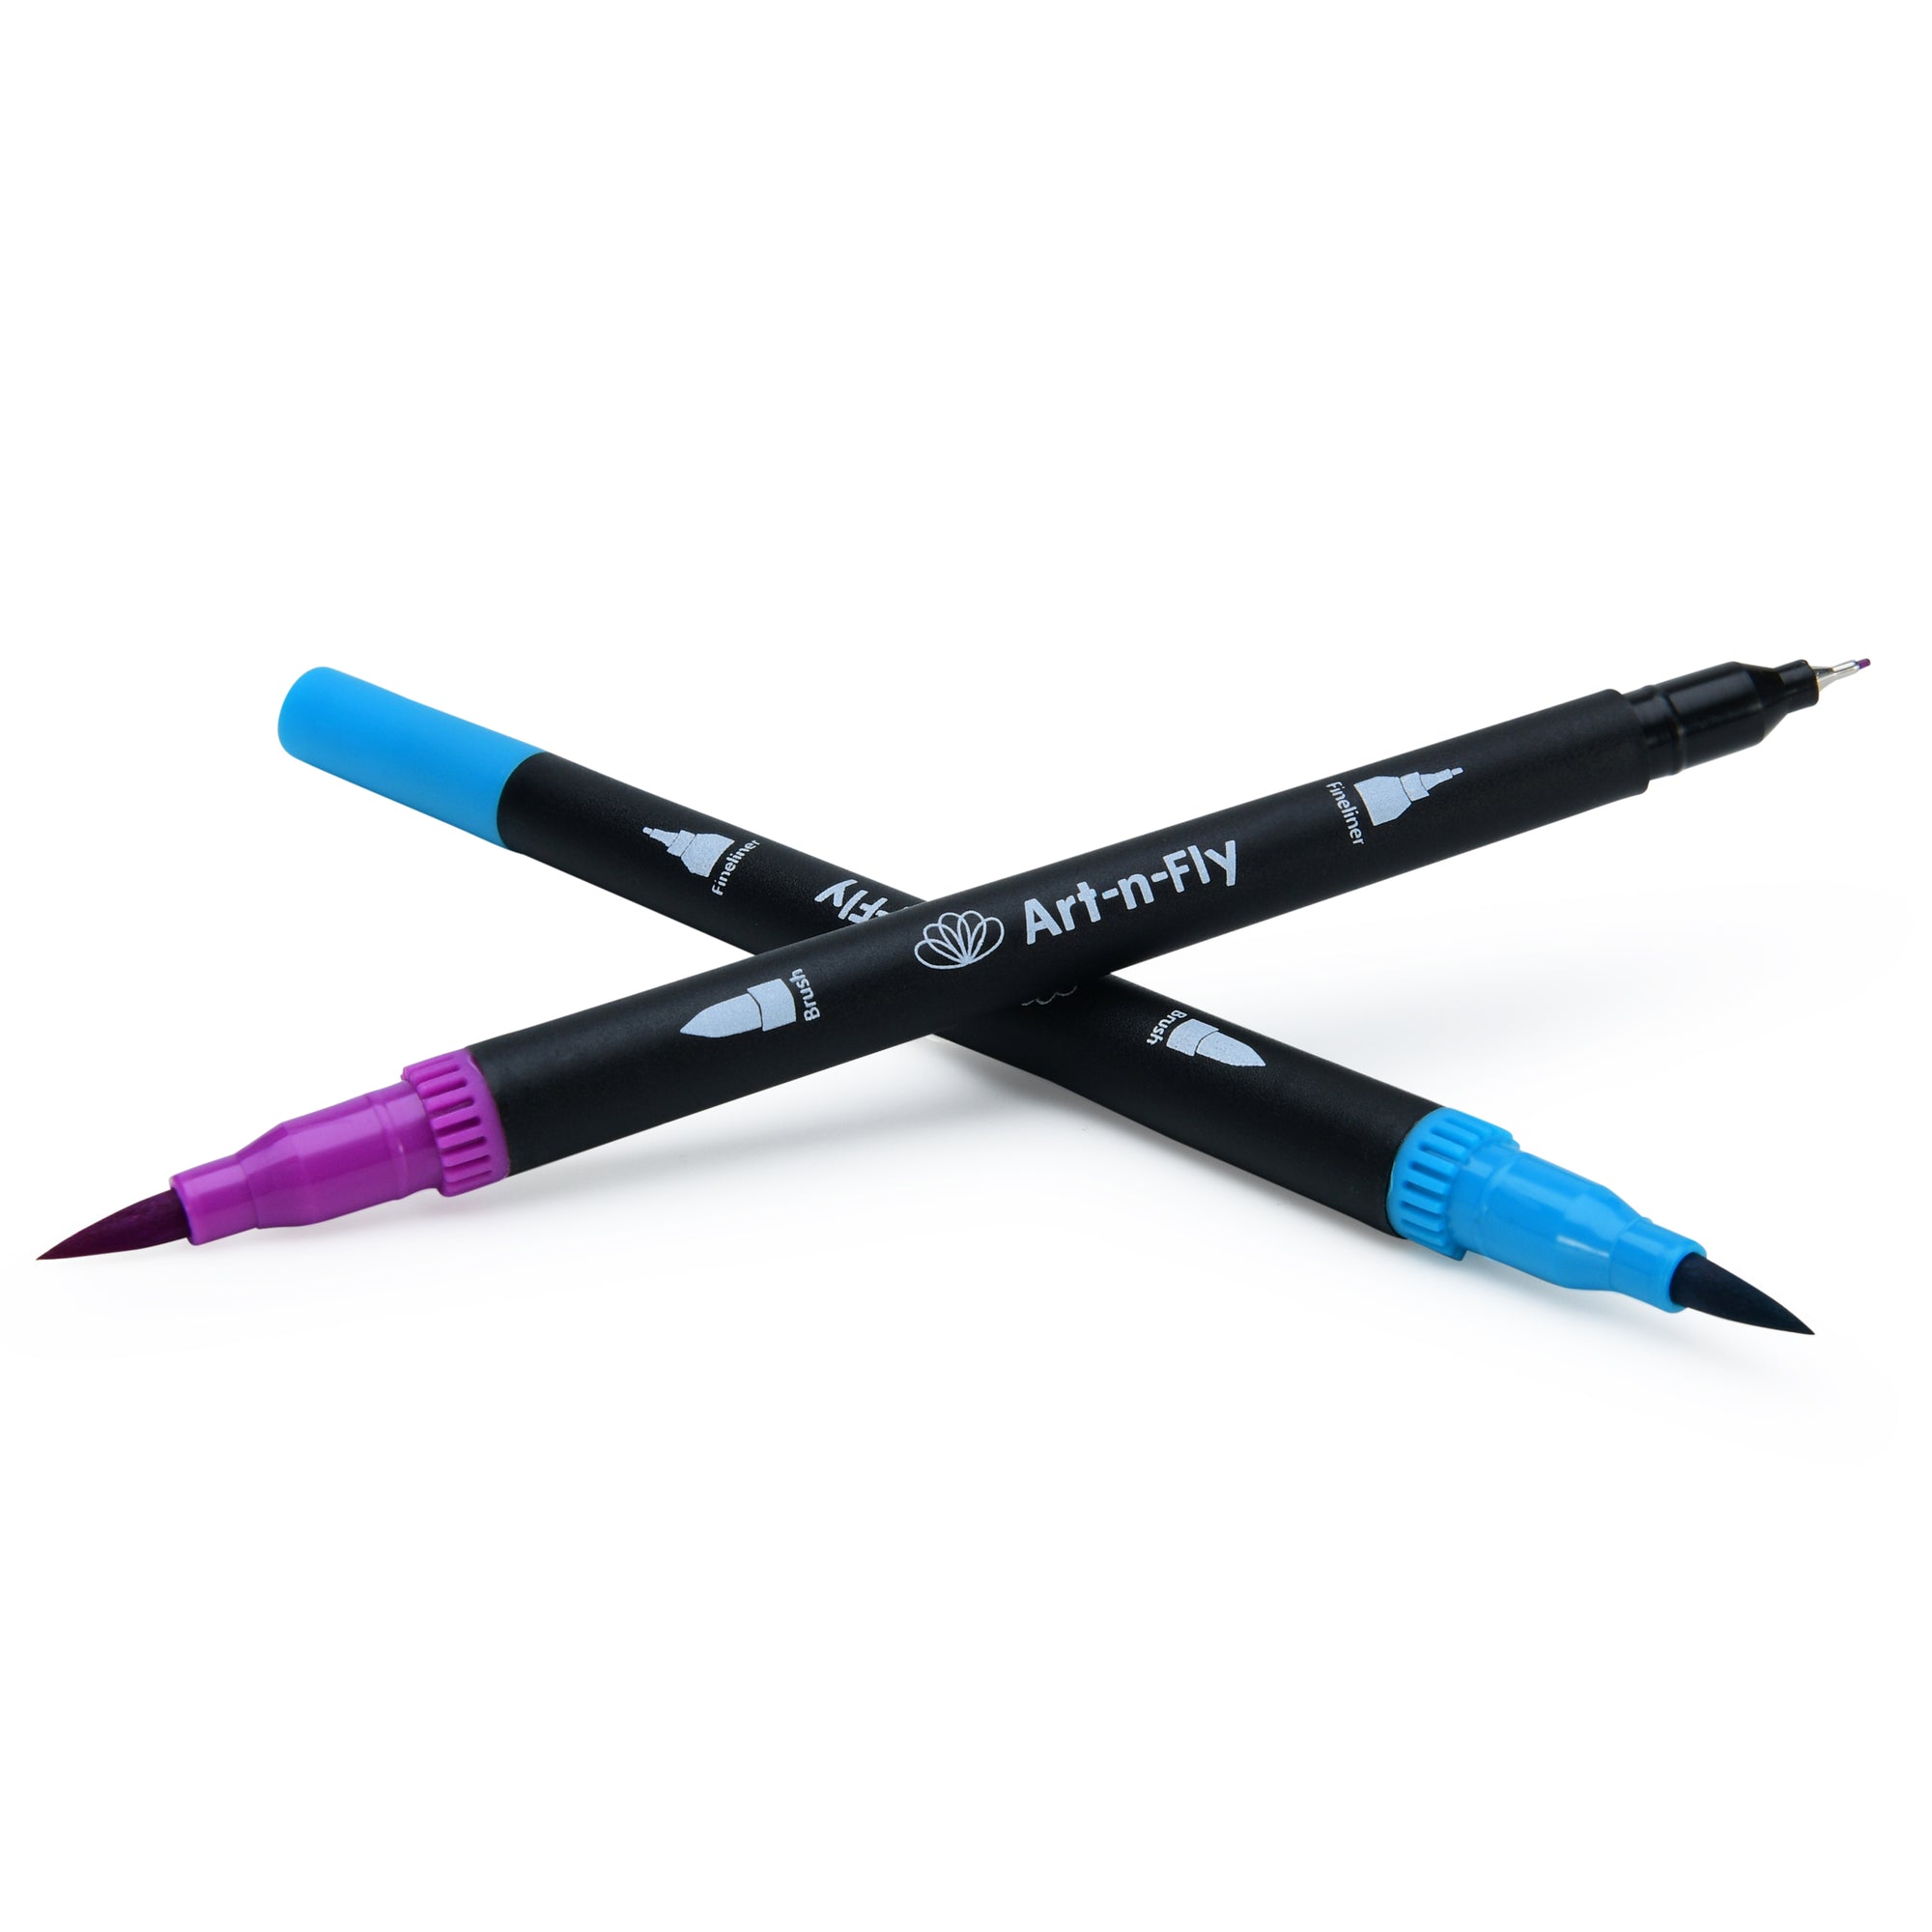 Combo 5 Pack - 2 Brush Tip & 3 Ultra Fine Tip Pens